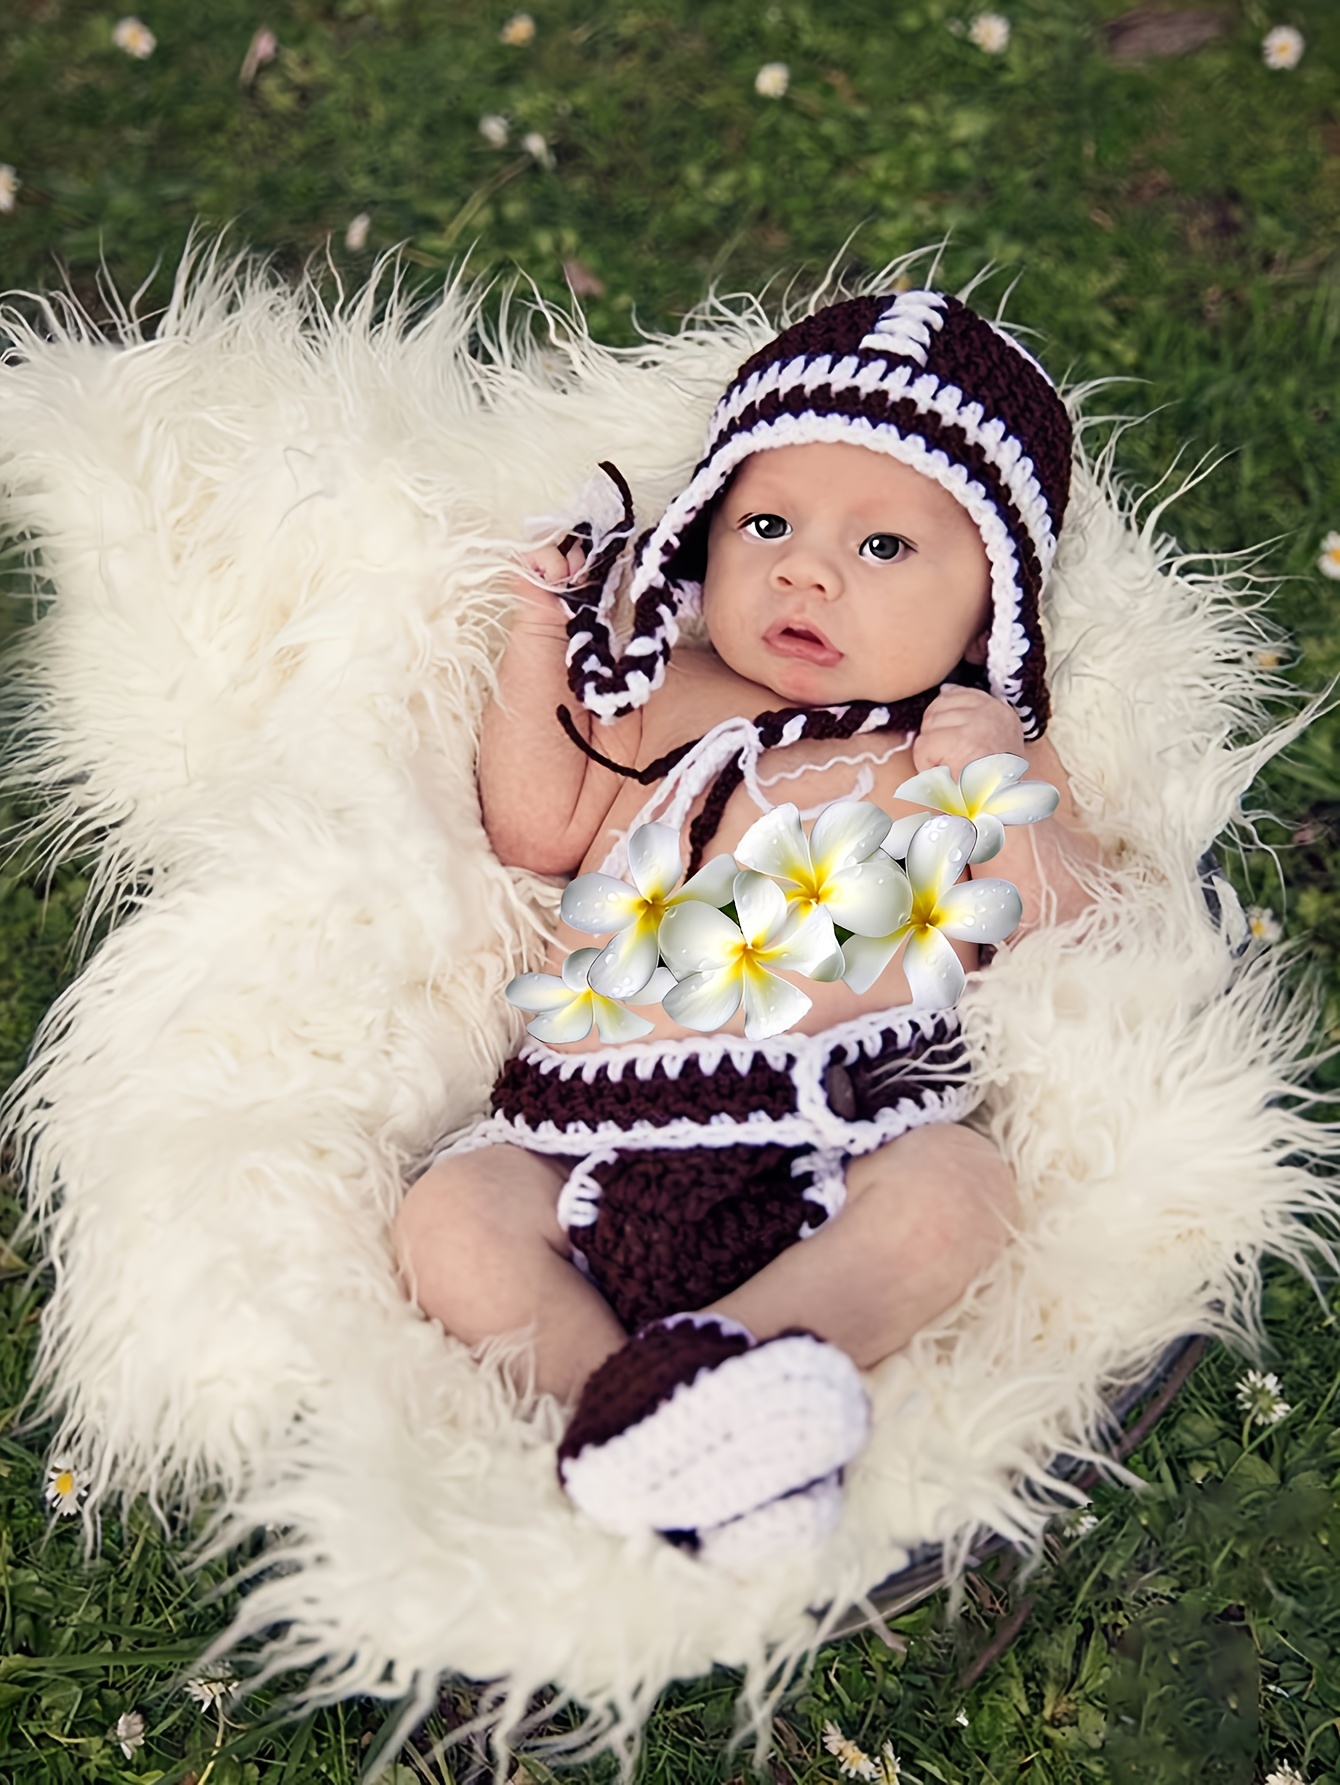 Comprar Atrezos para fotografía de bebés recién nacidos, sombrero floral  hecho a mano, gorro colorido, accesorios para sesión de fotos en estudio,  fotografía